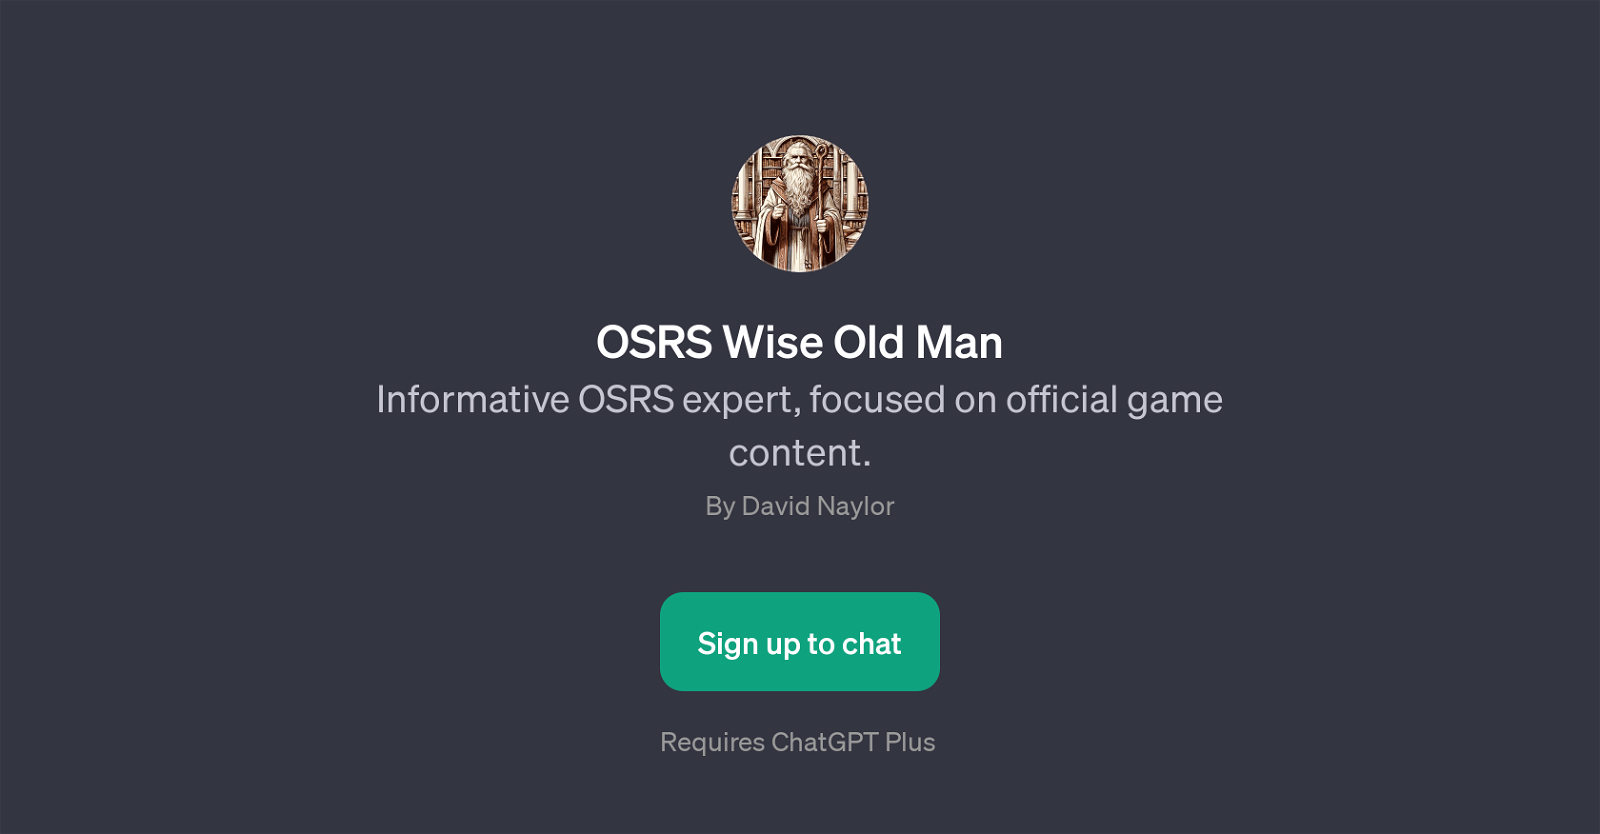 OSRS Wise Old Man website